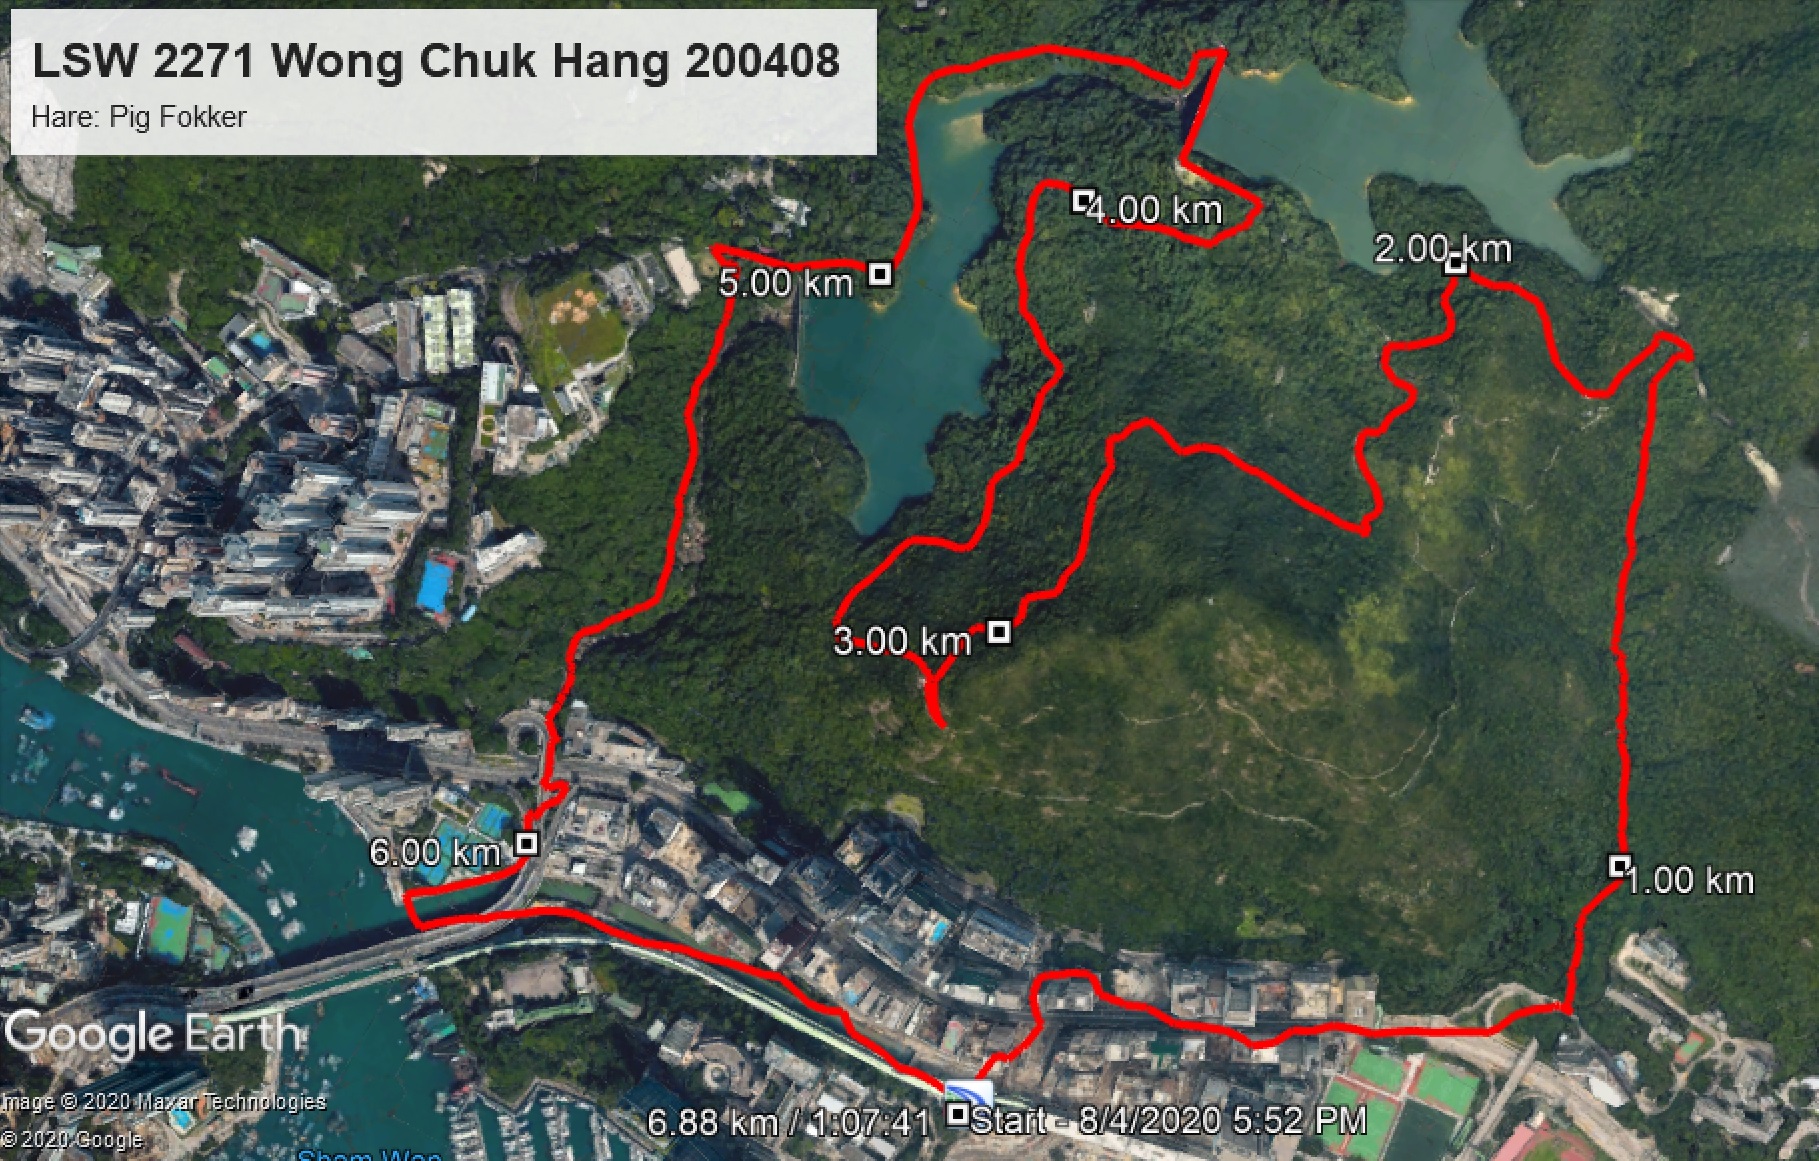 Wong Chuk Hang 200408 6.88km 67mins